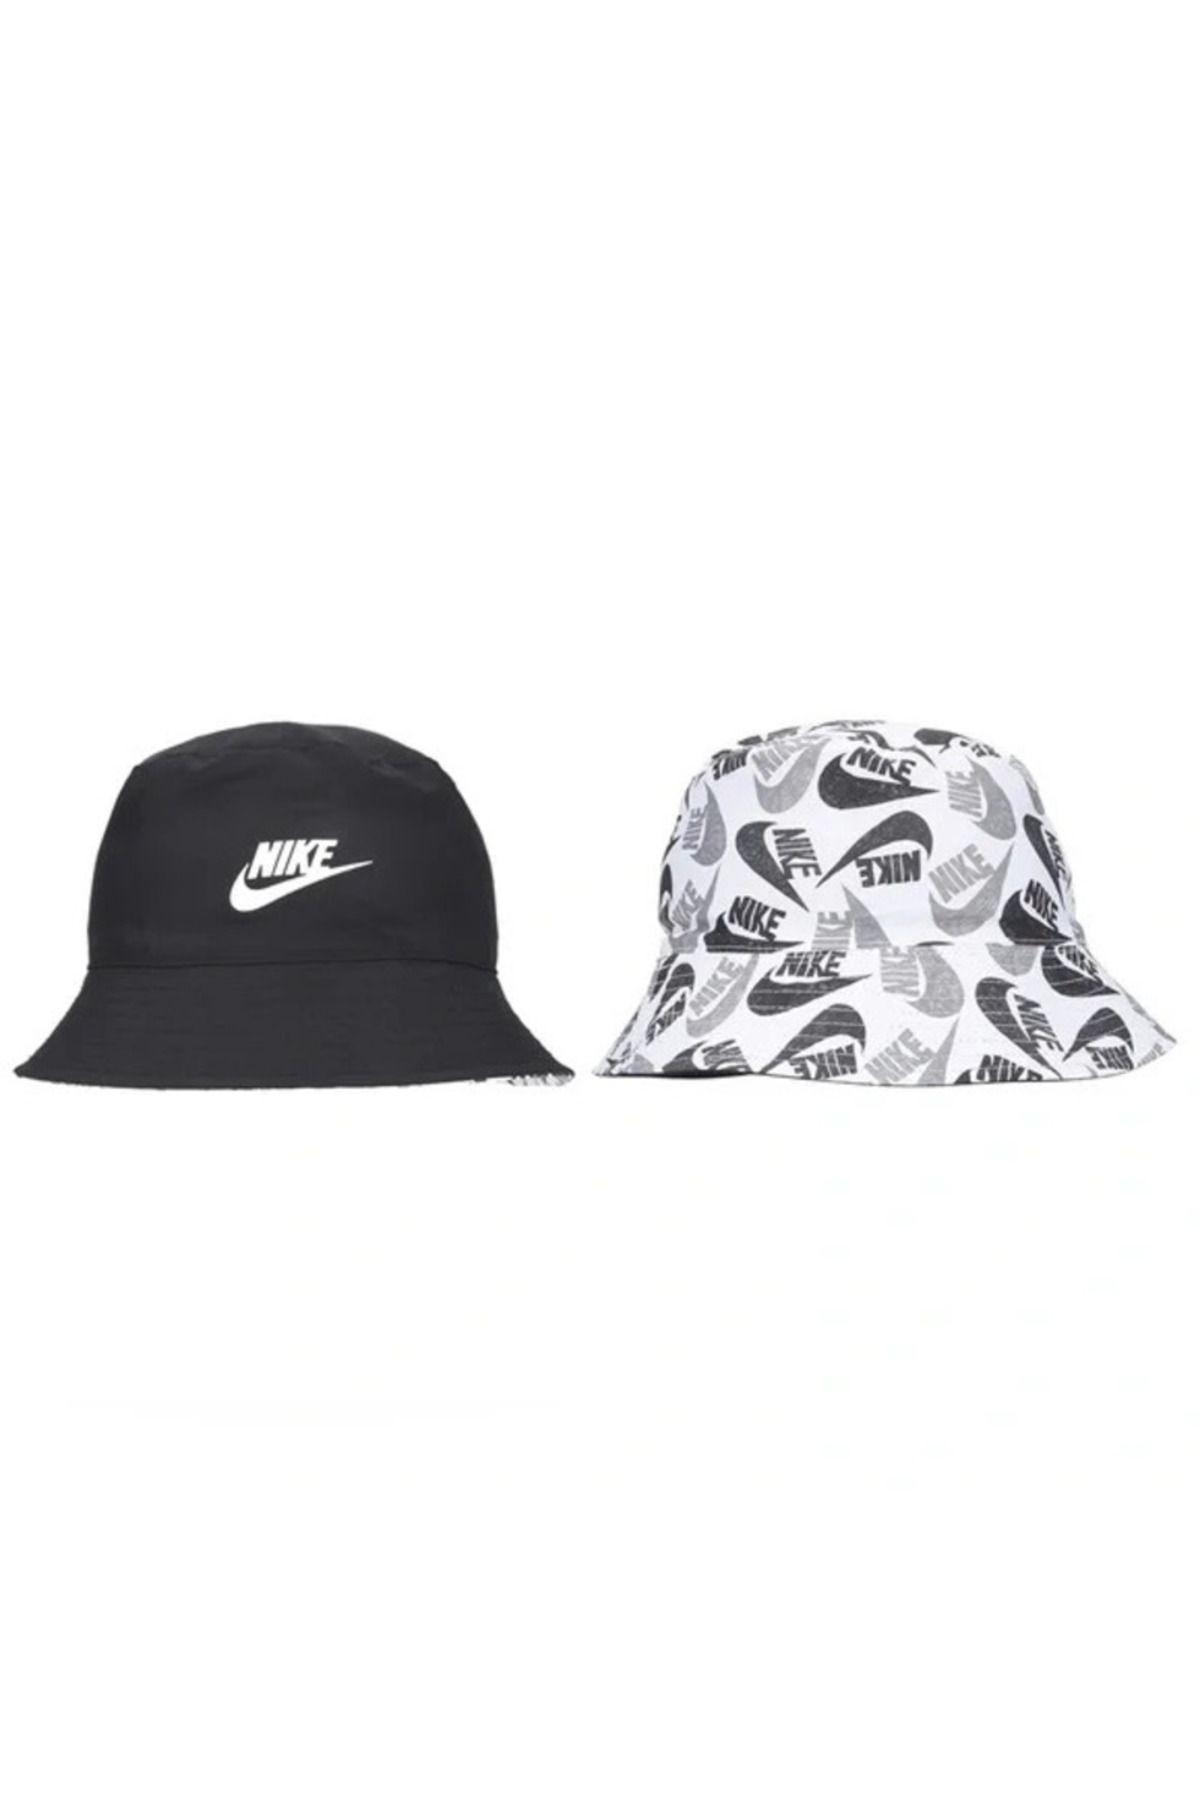 Nike Çift Yönlü Çocuk Şapka  Düz ve Desenli Siyah Beyaz